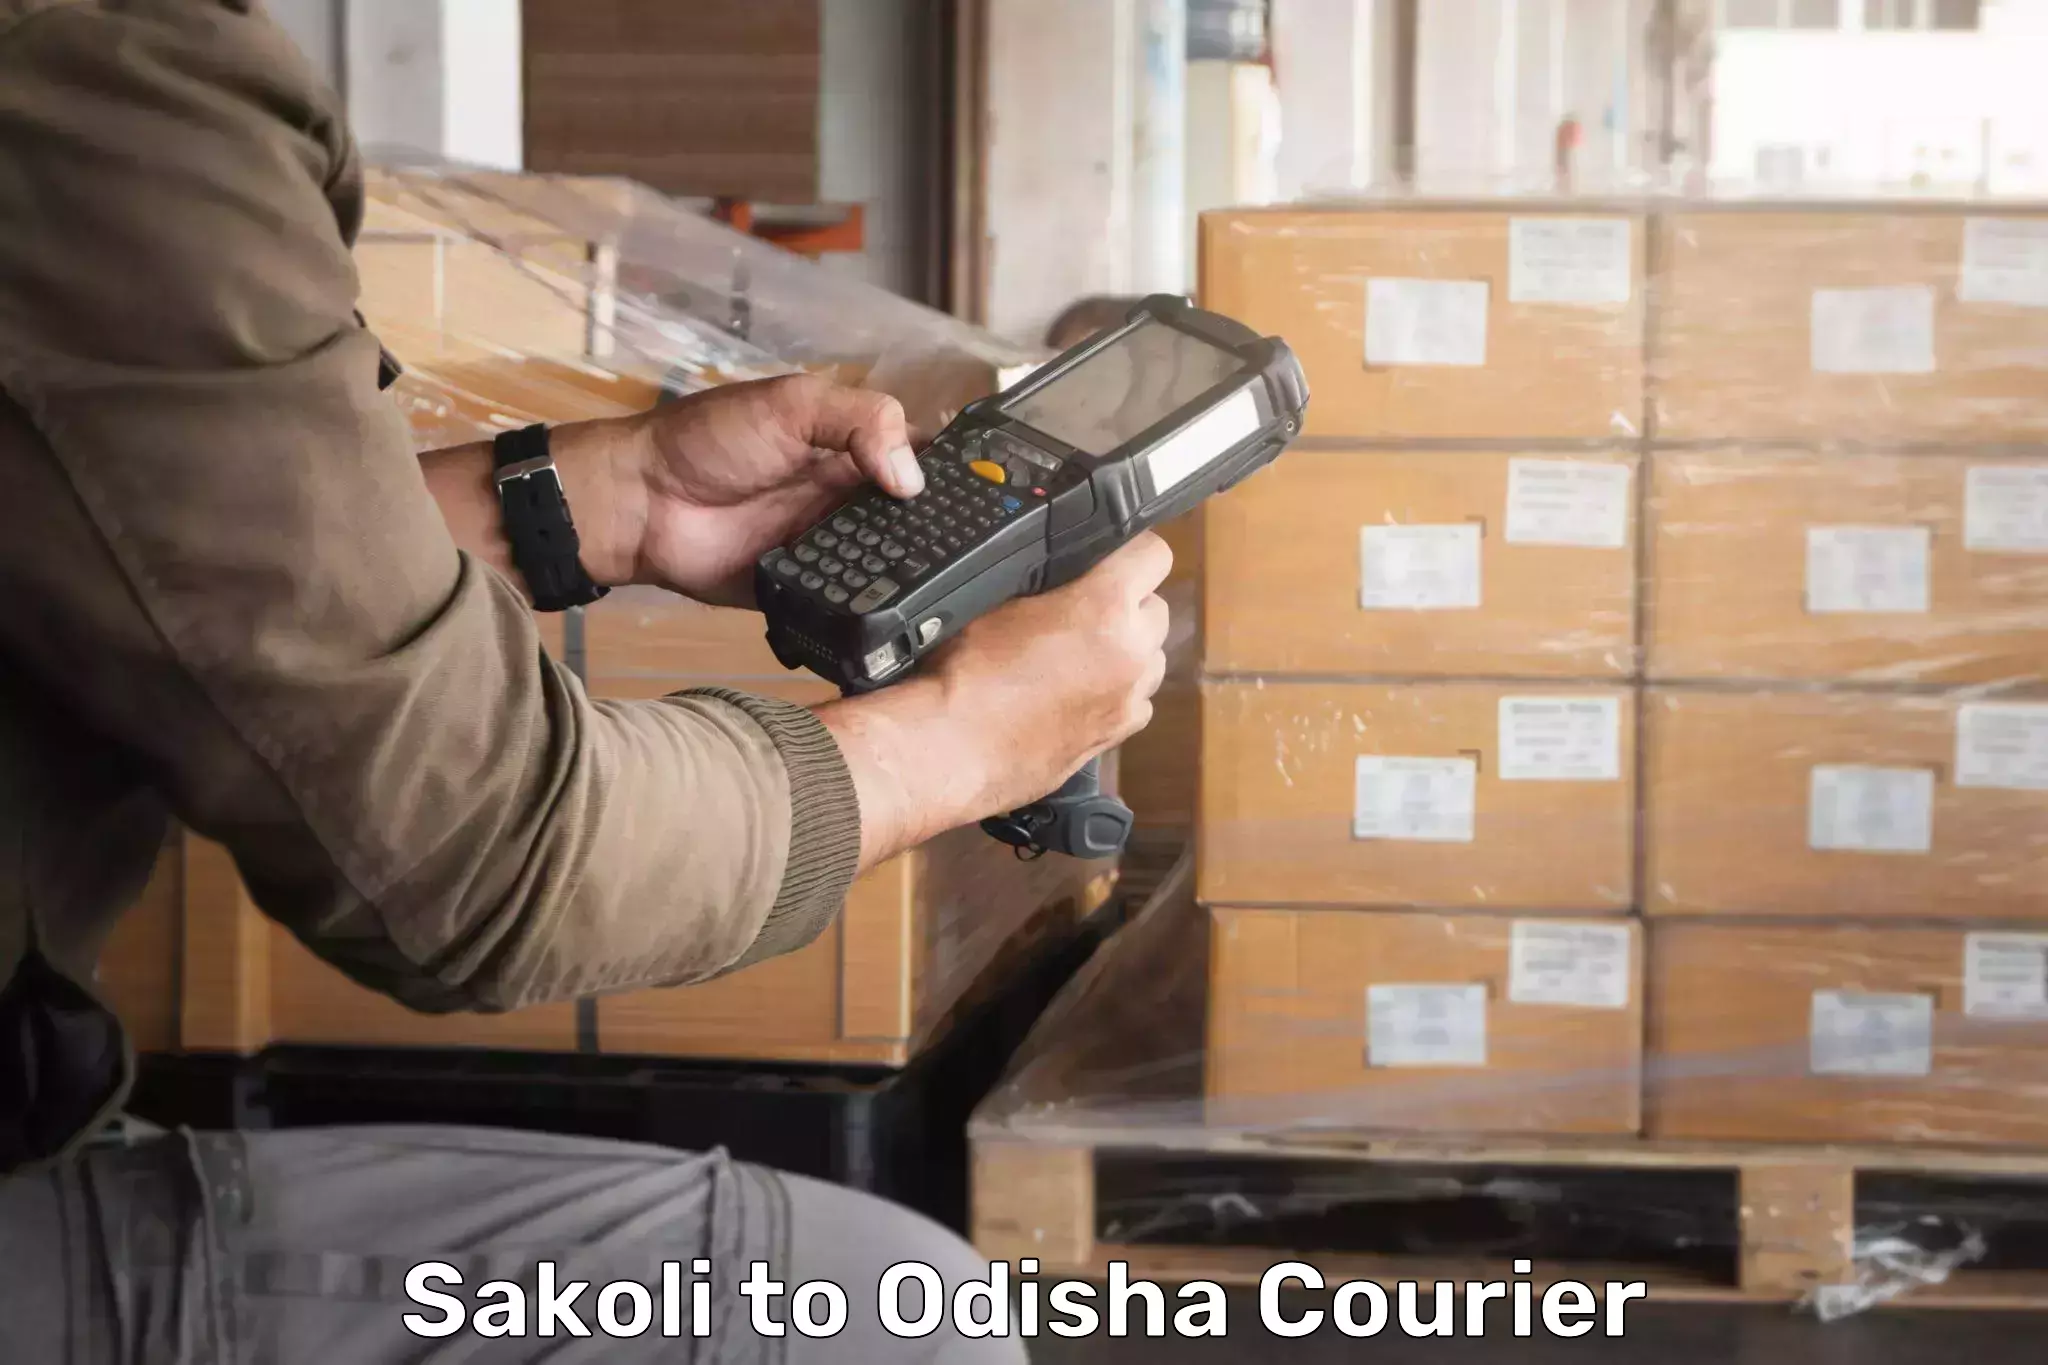 Customized delivery solutions in Sakoli to Kupari